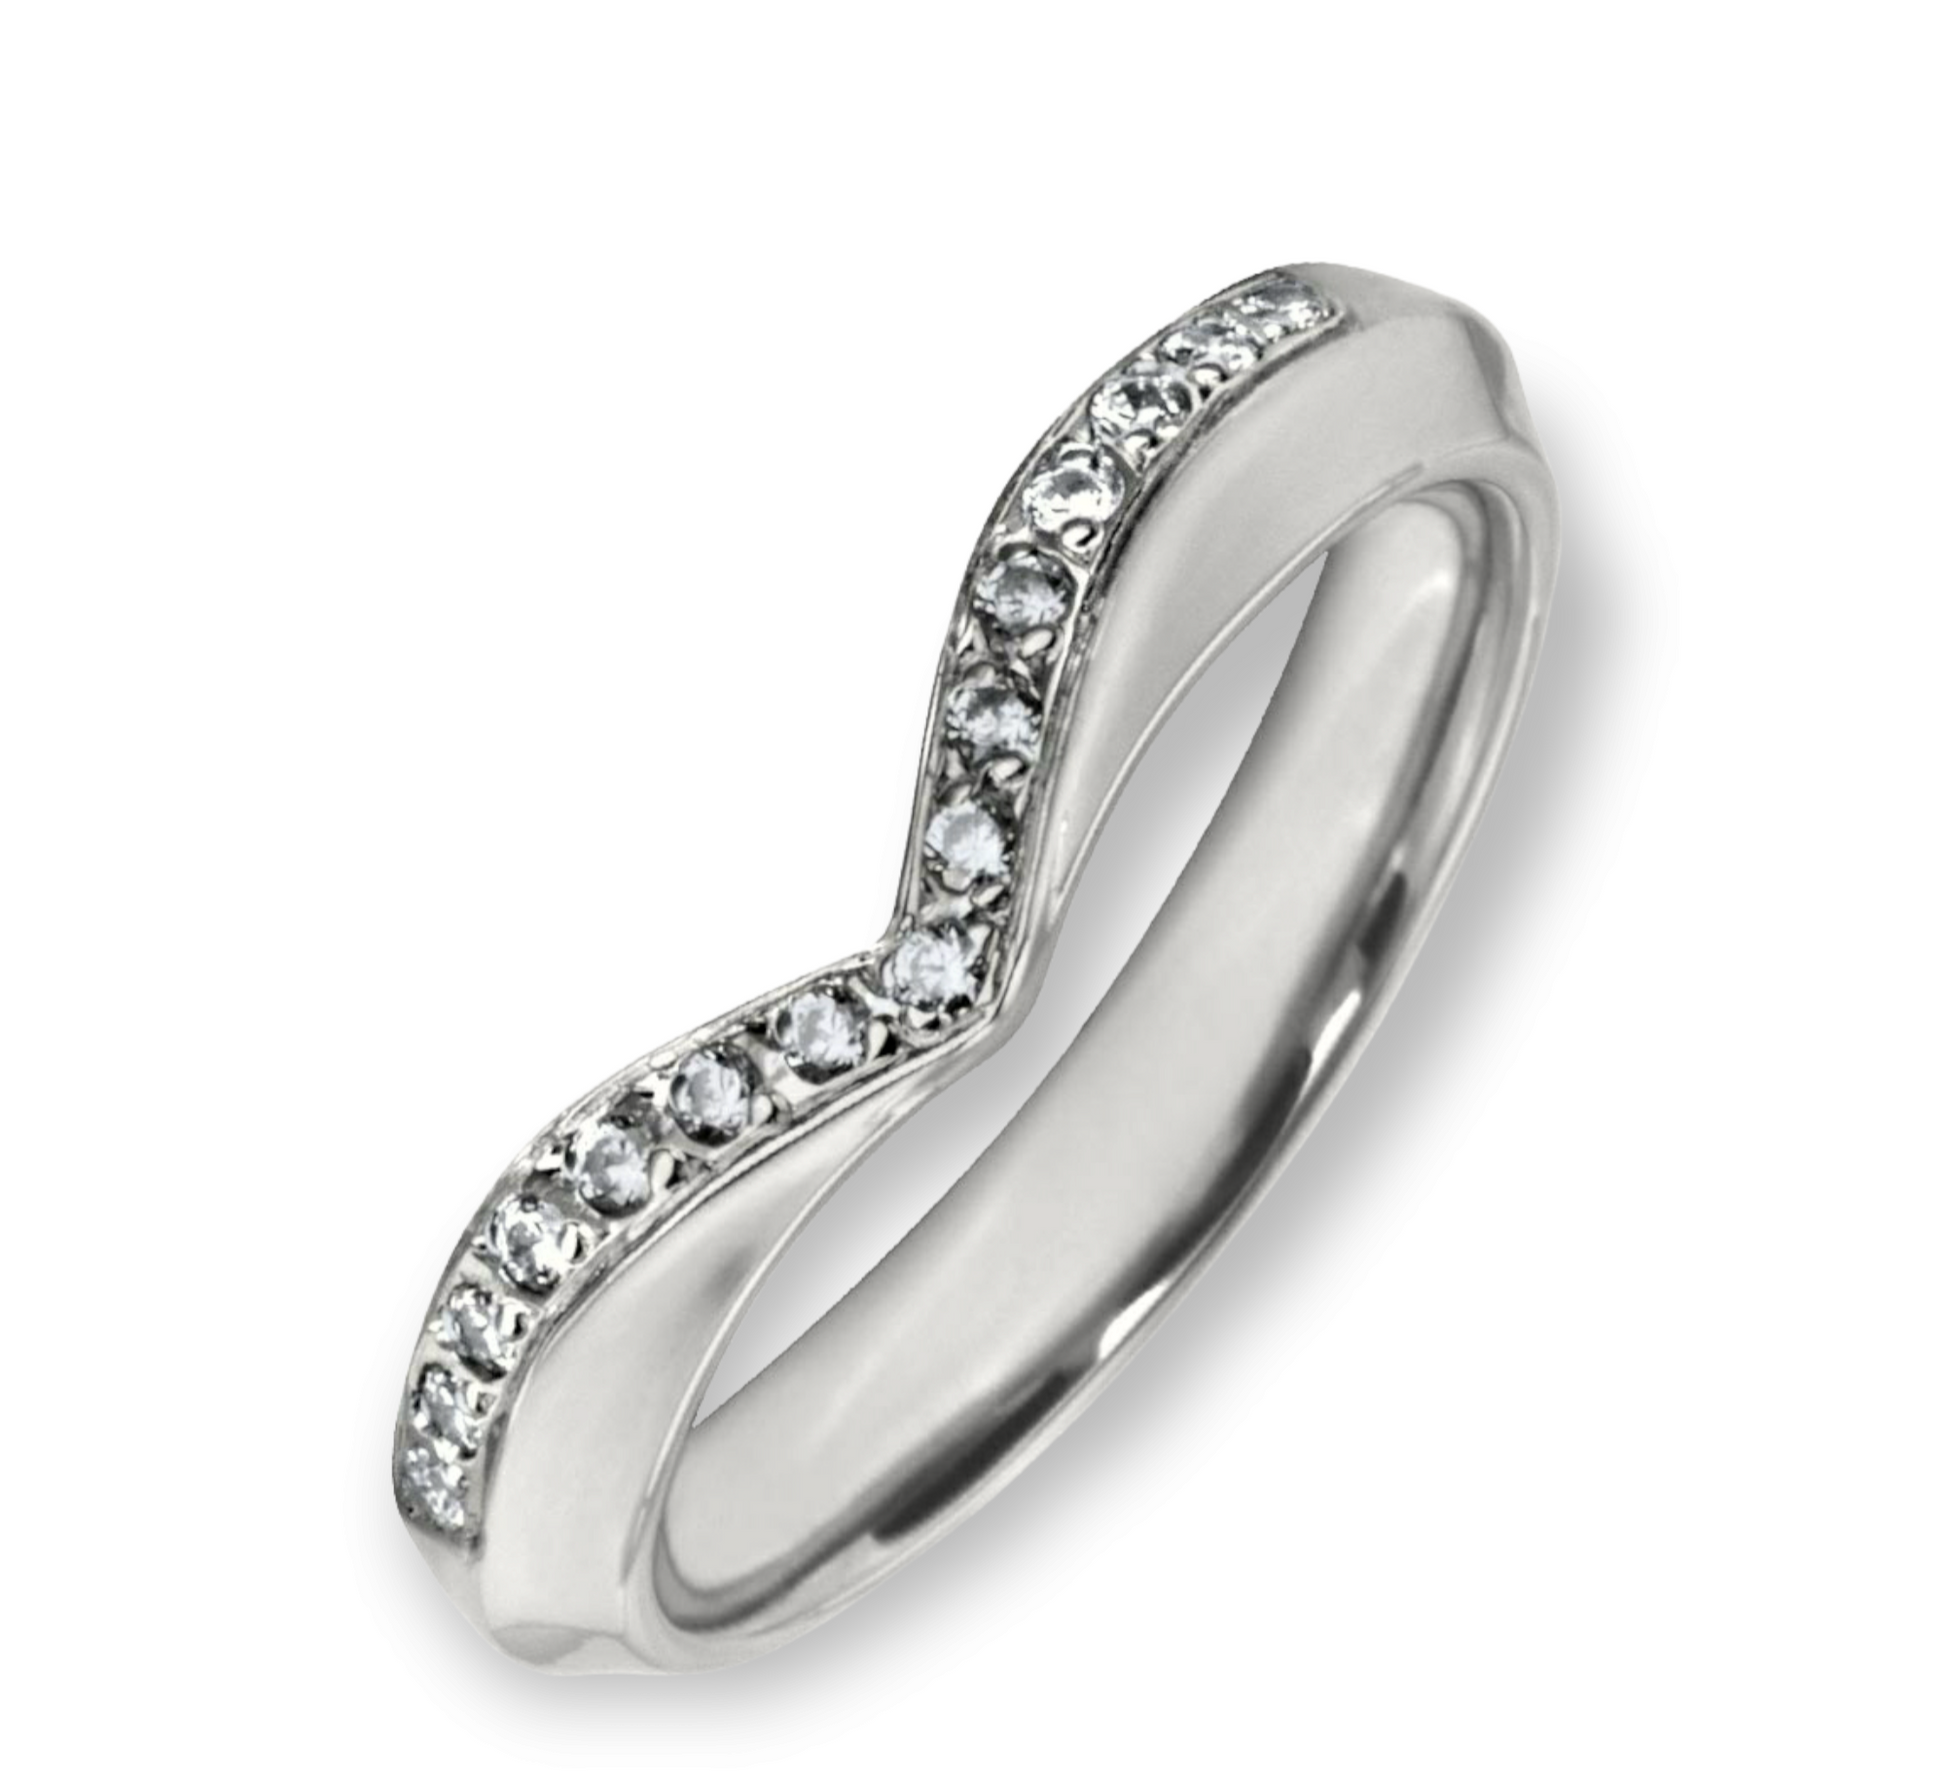 White gold diamond wishbone wedding ring